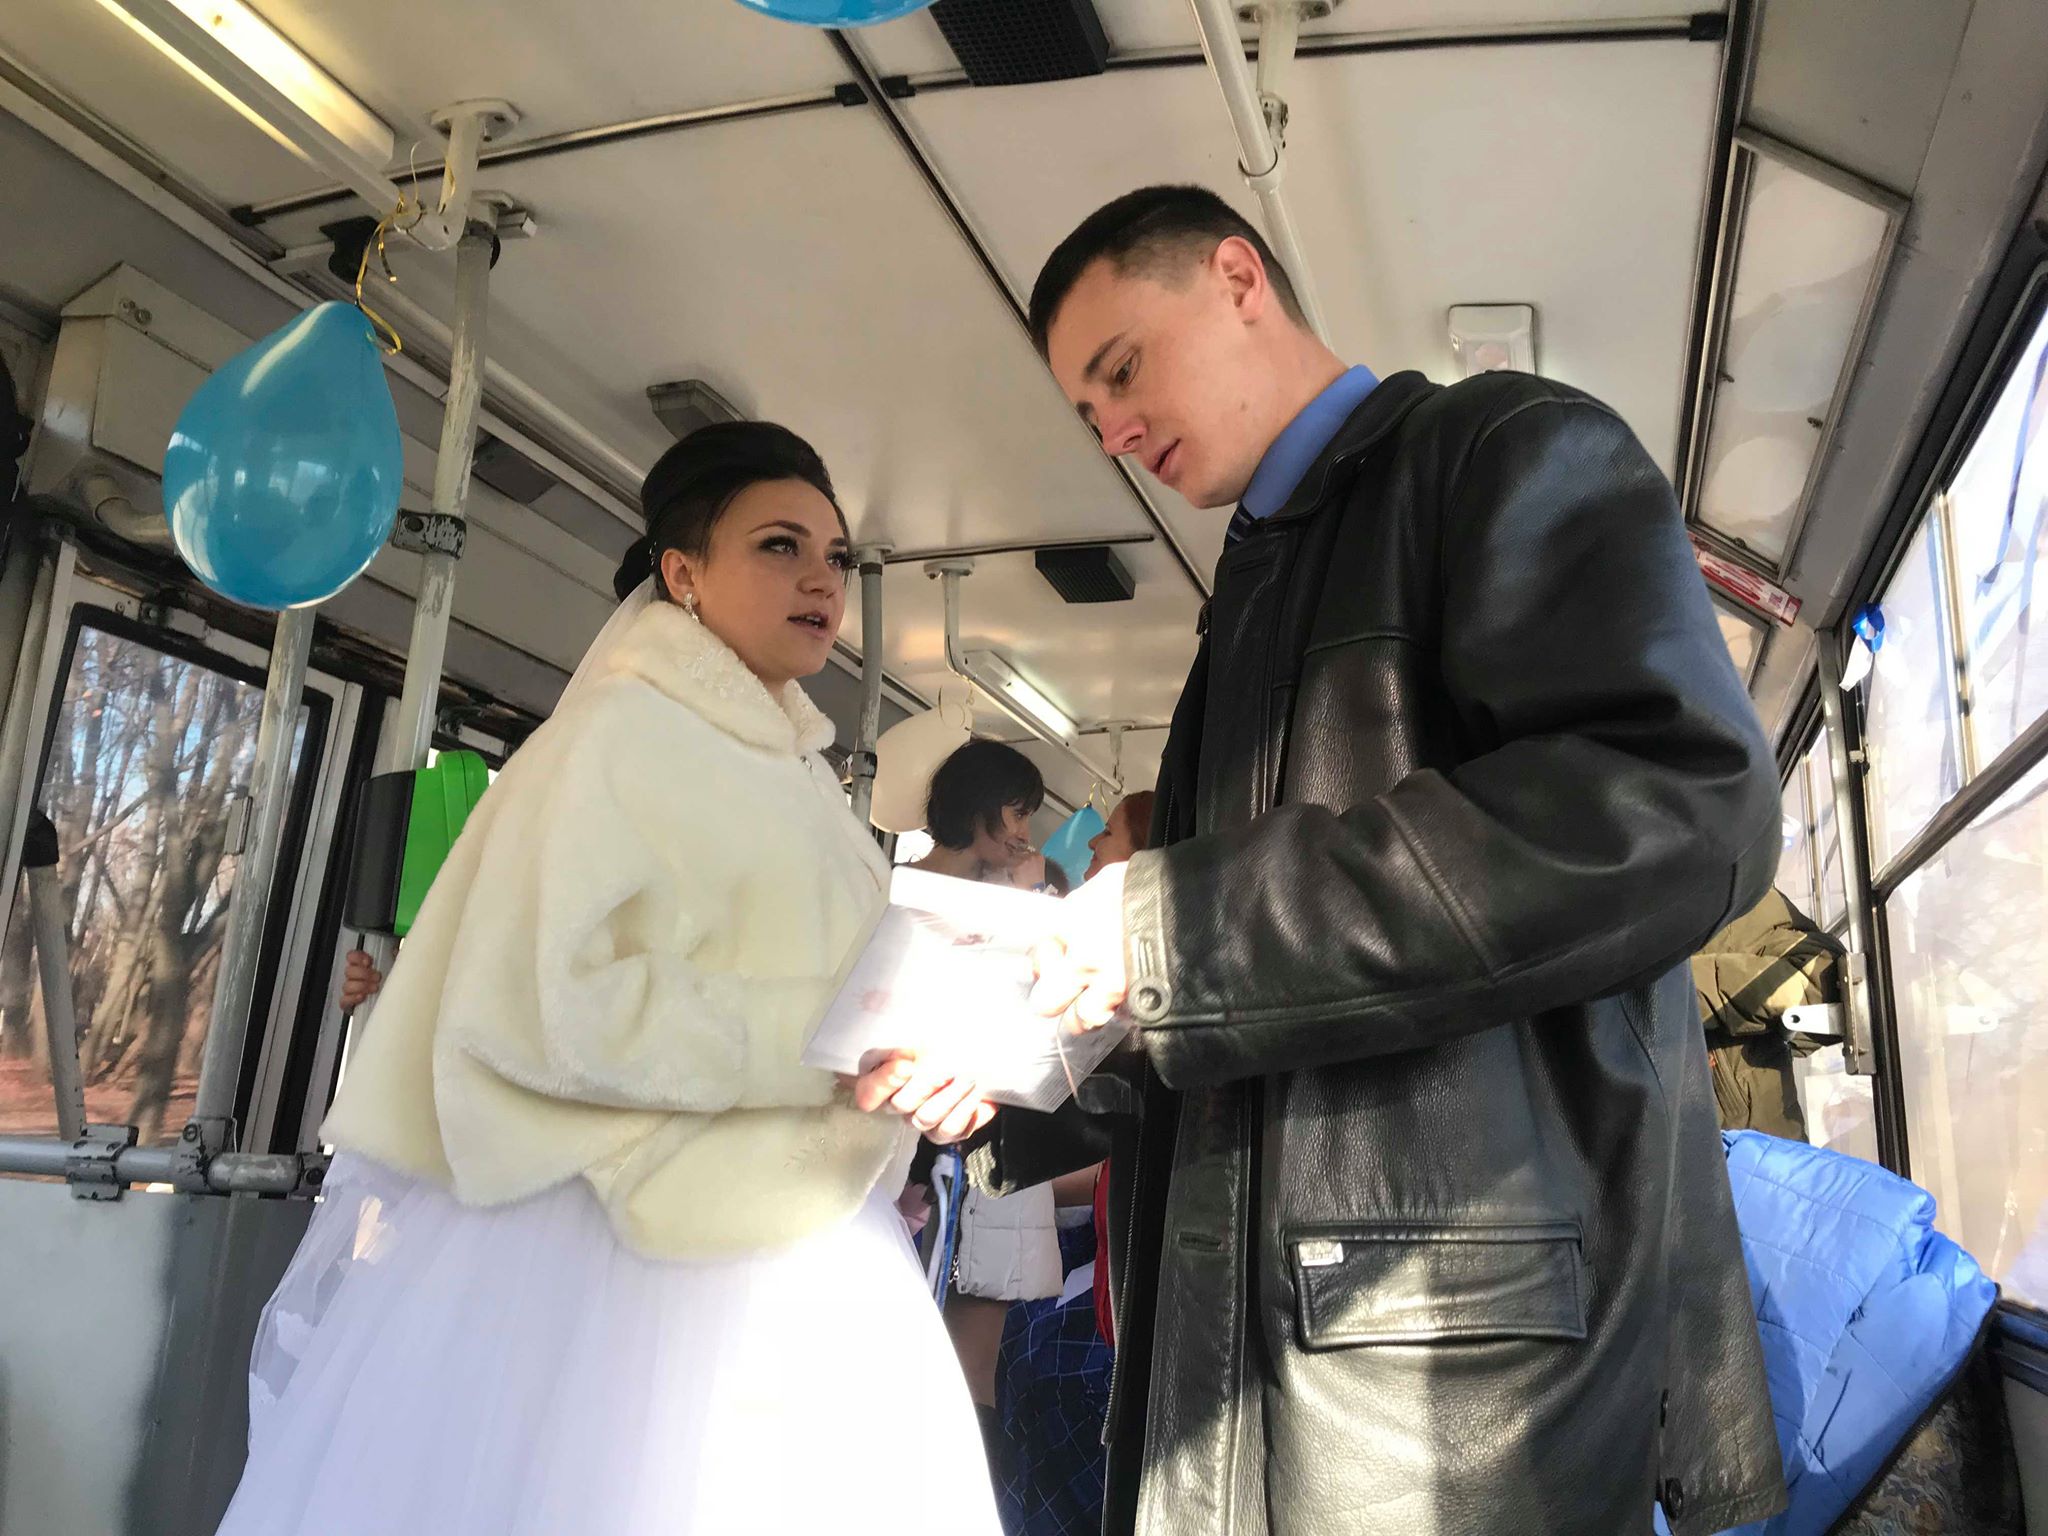 Водитель и кондуктор сыграли свадьбу в троллейбусе. Фото